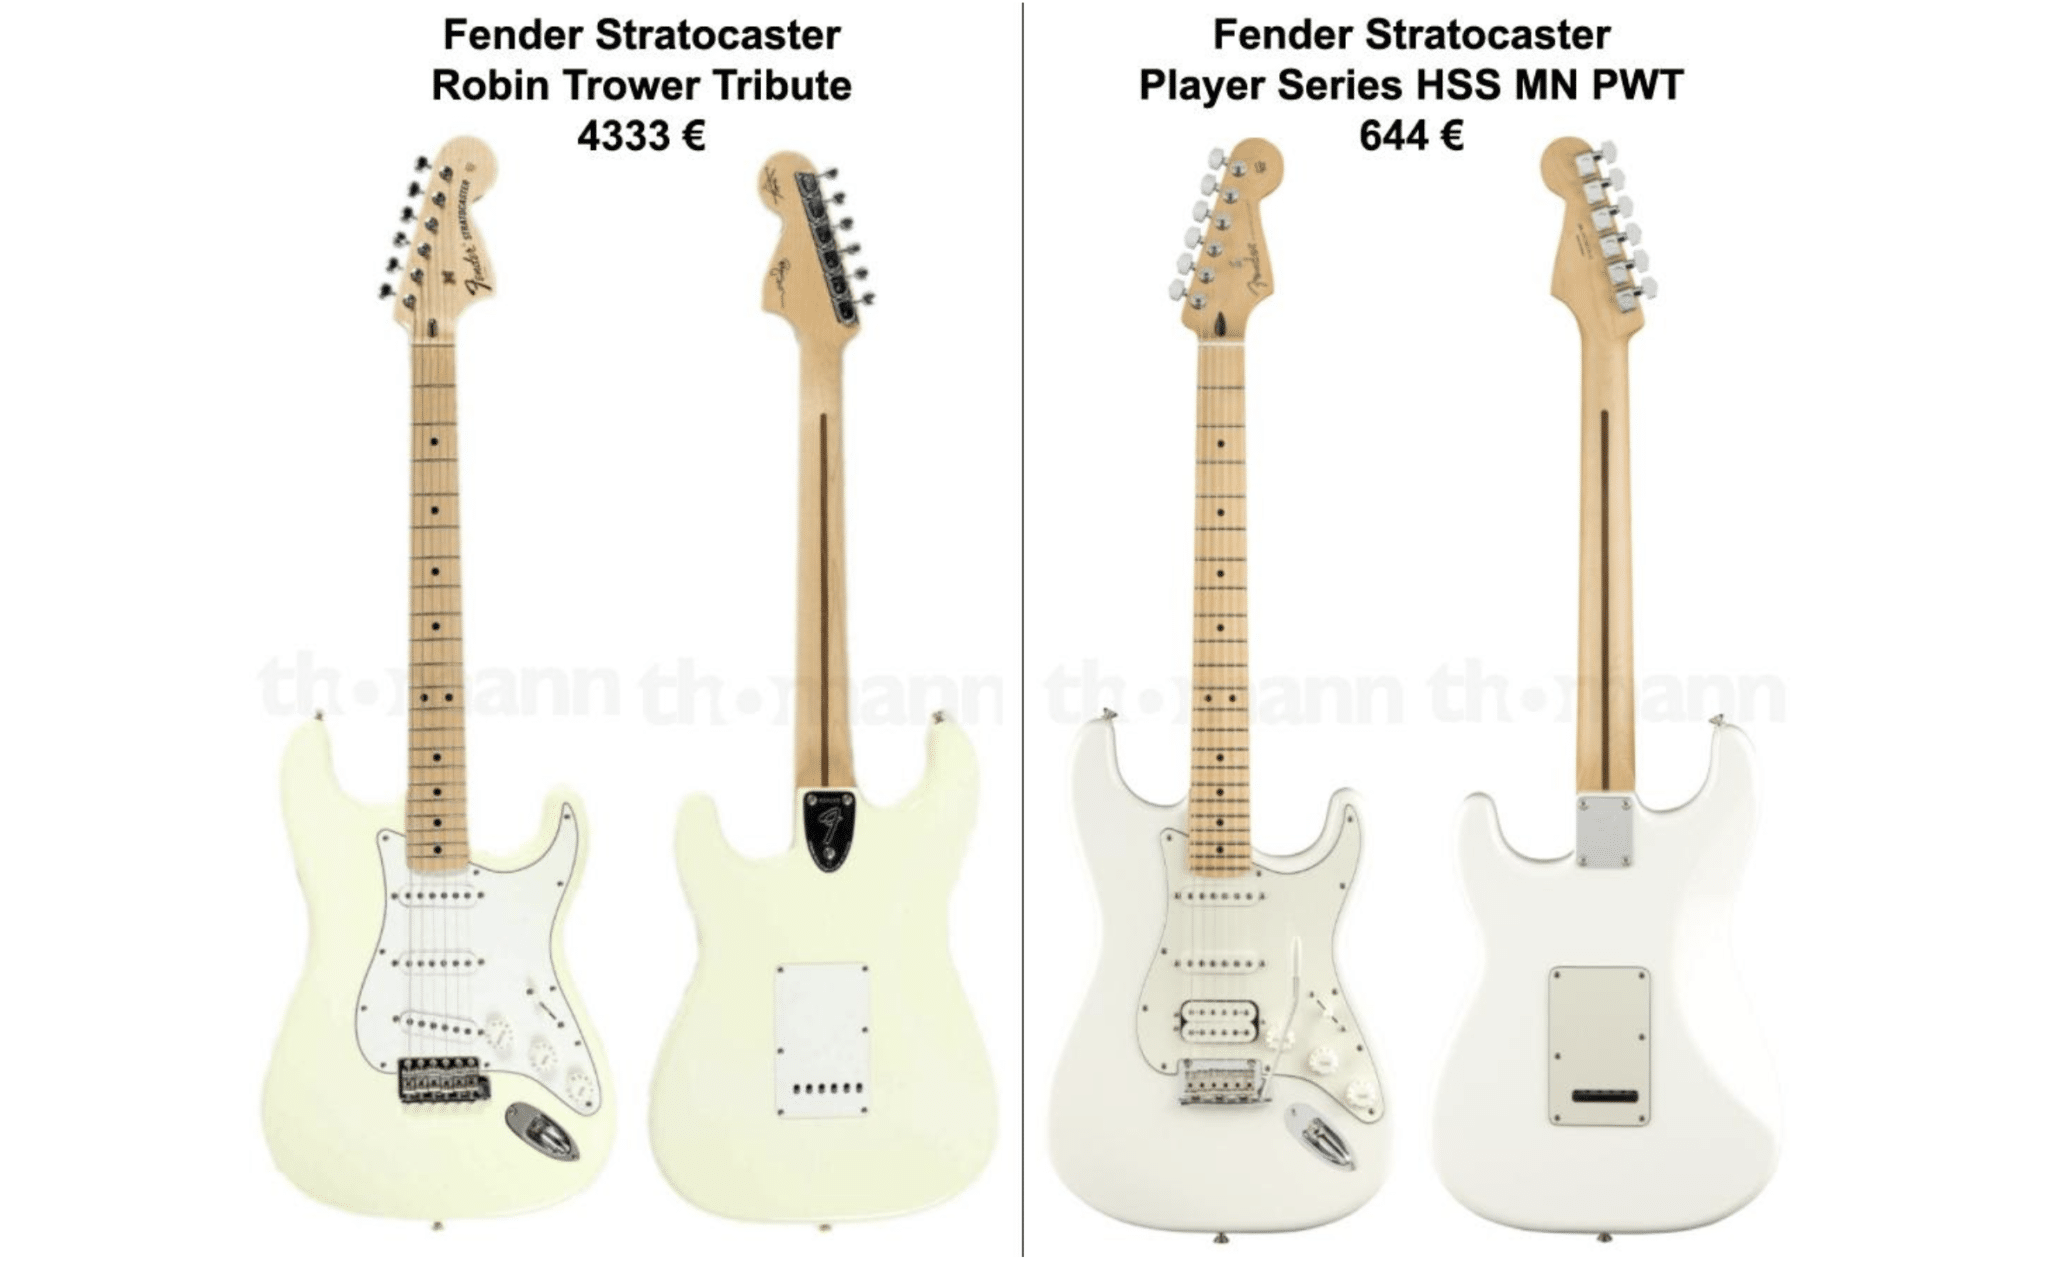 Fender Stratocaster - comparaison des modèles